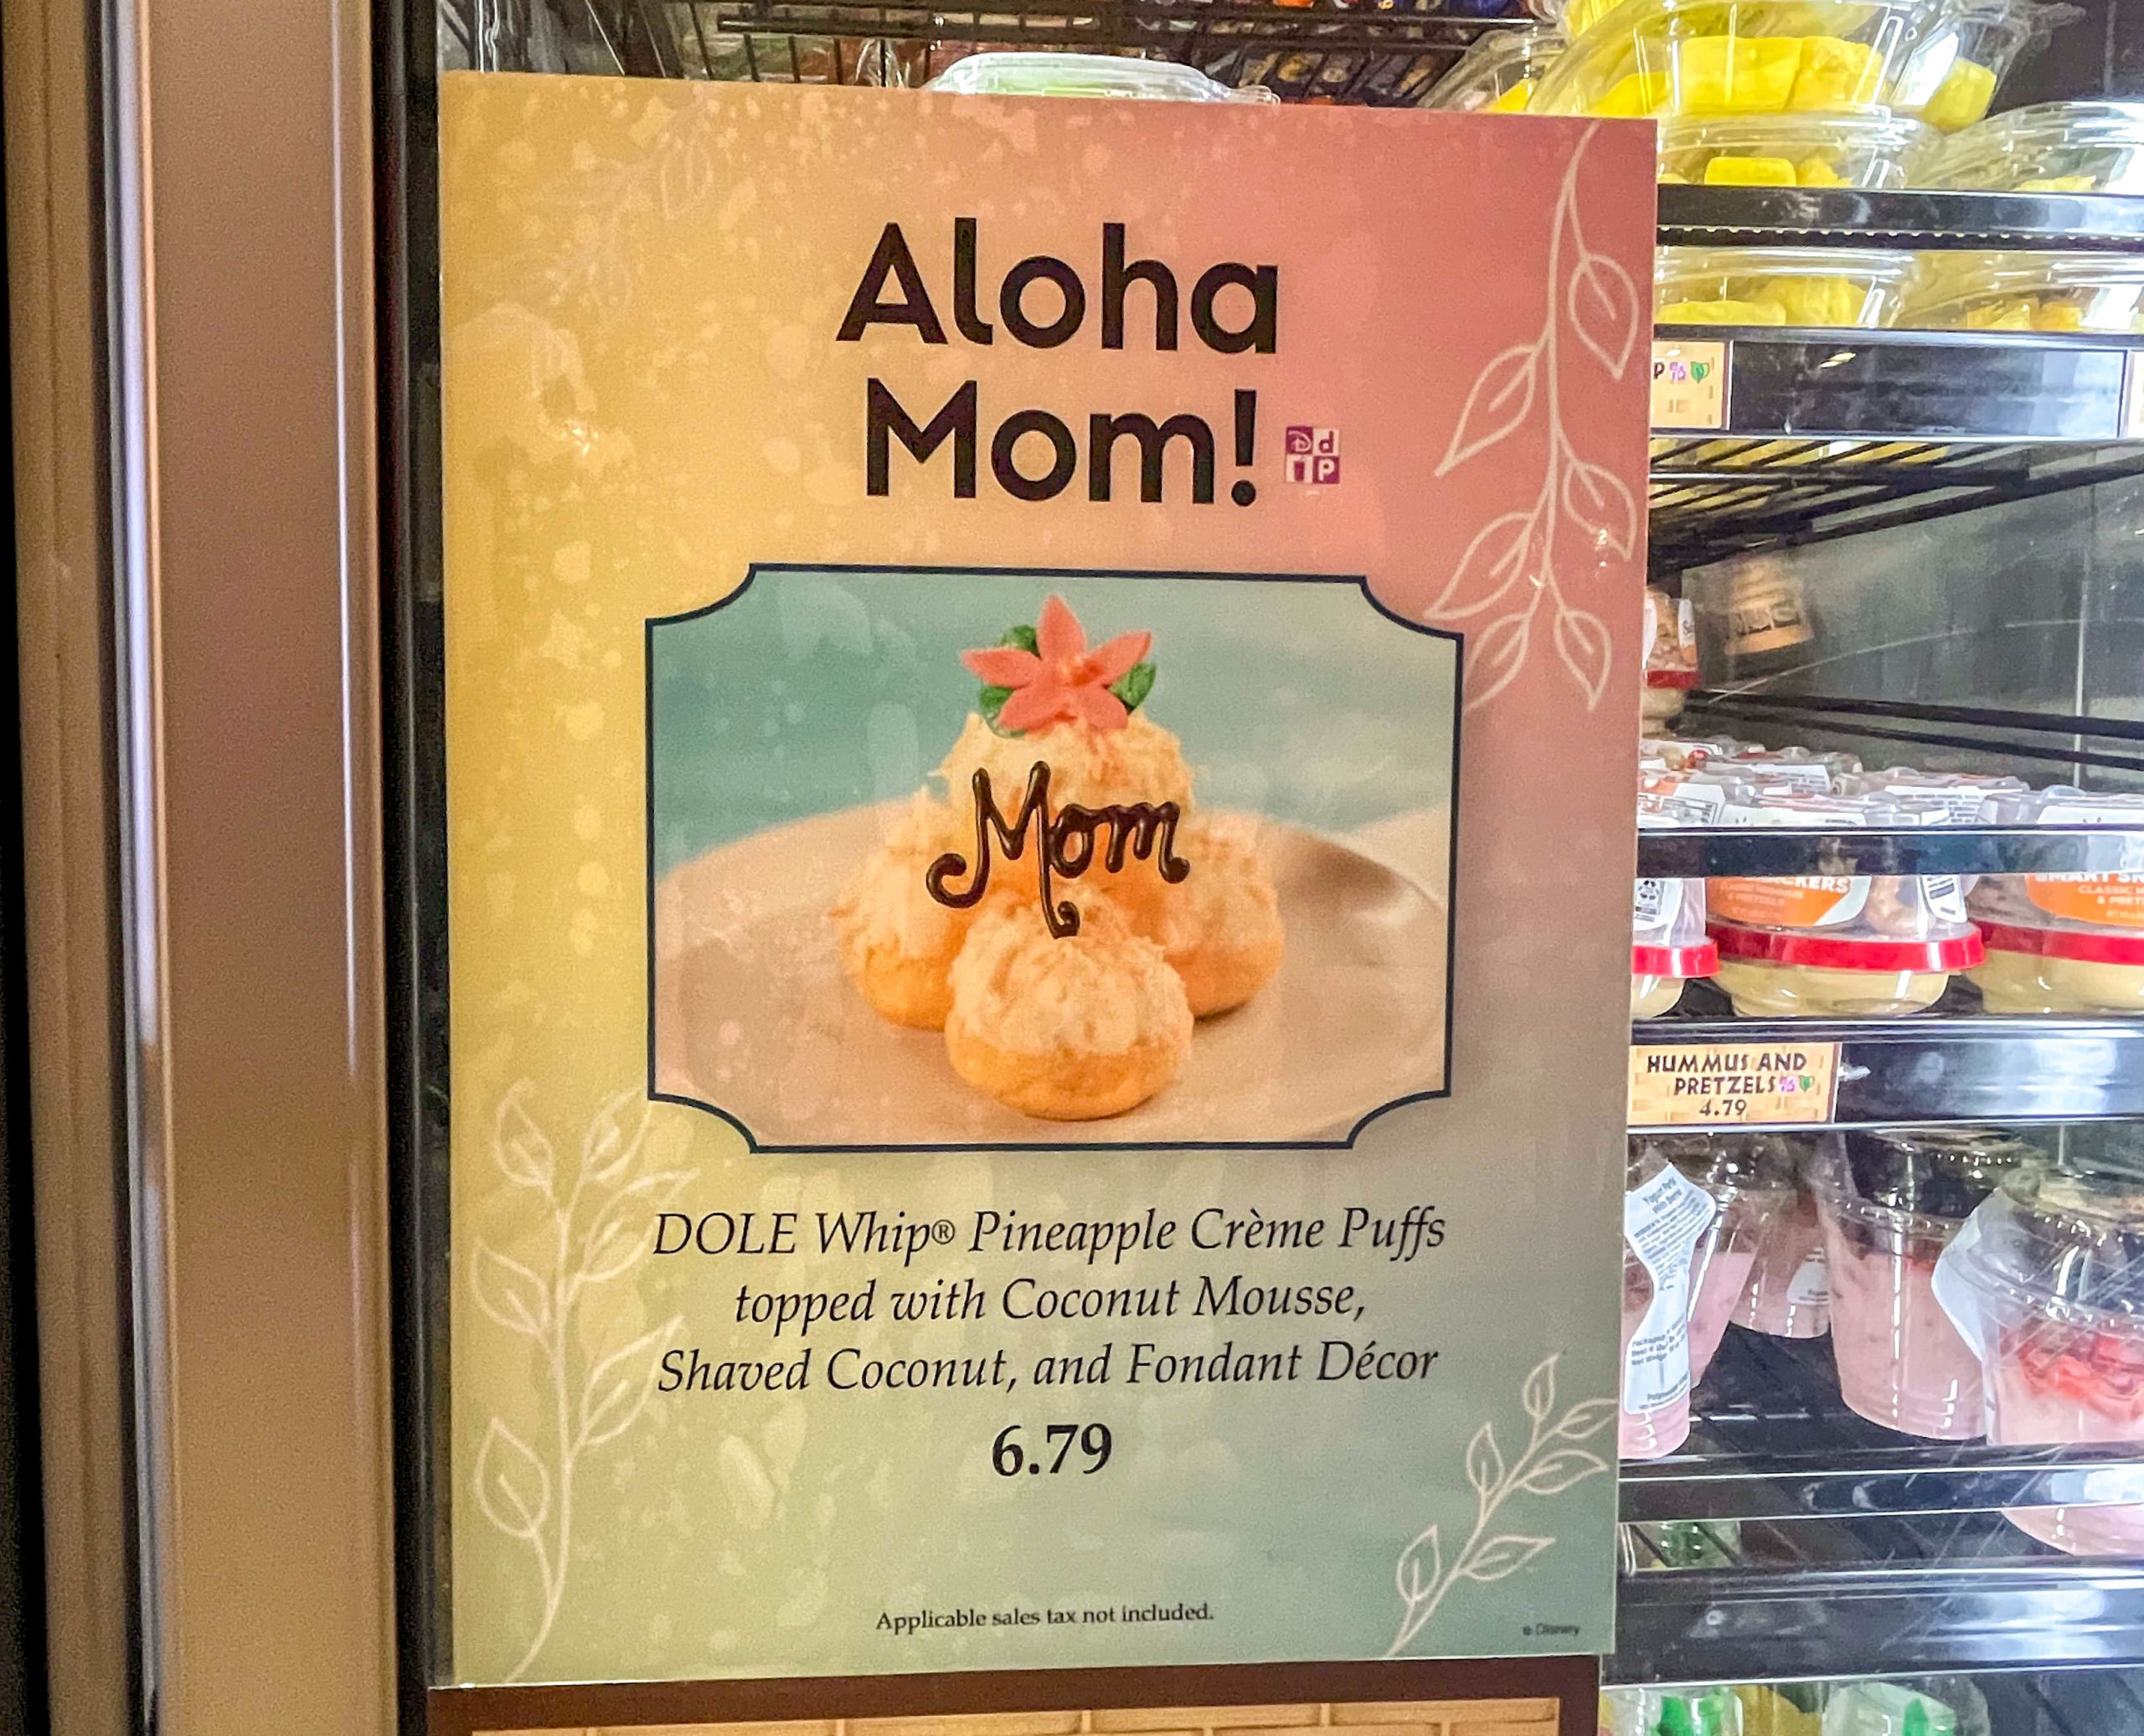 Aloha Mom!